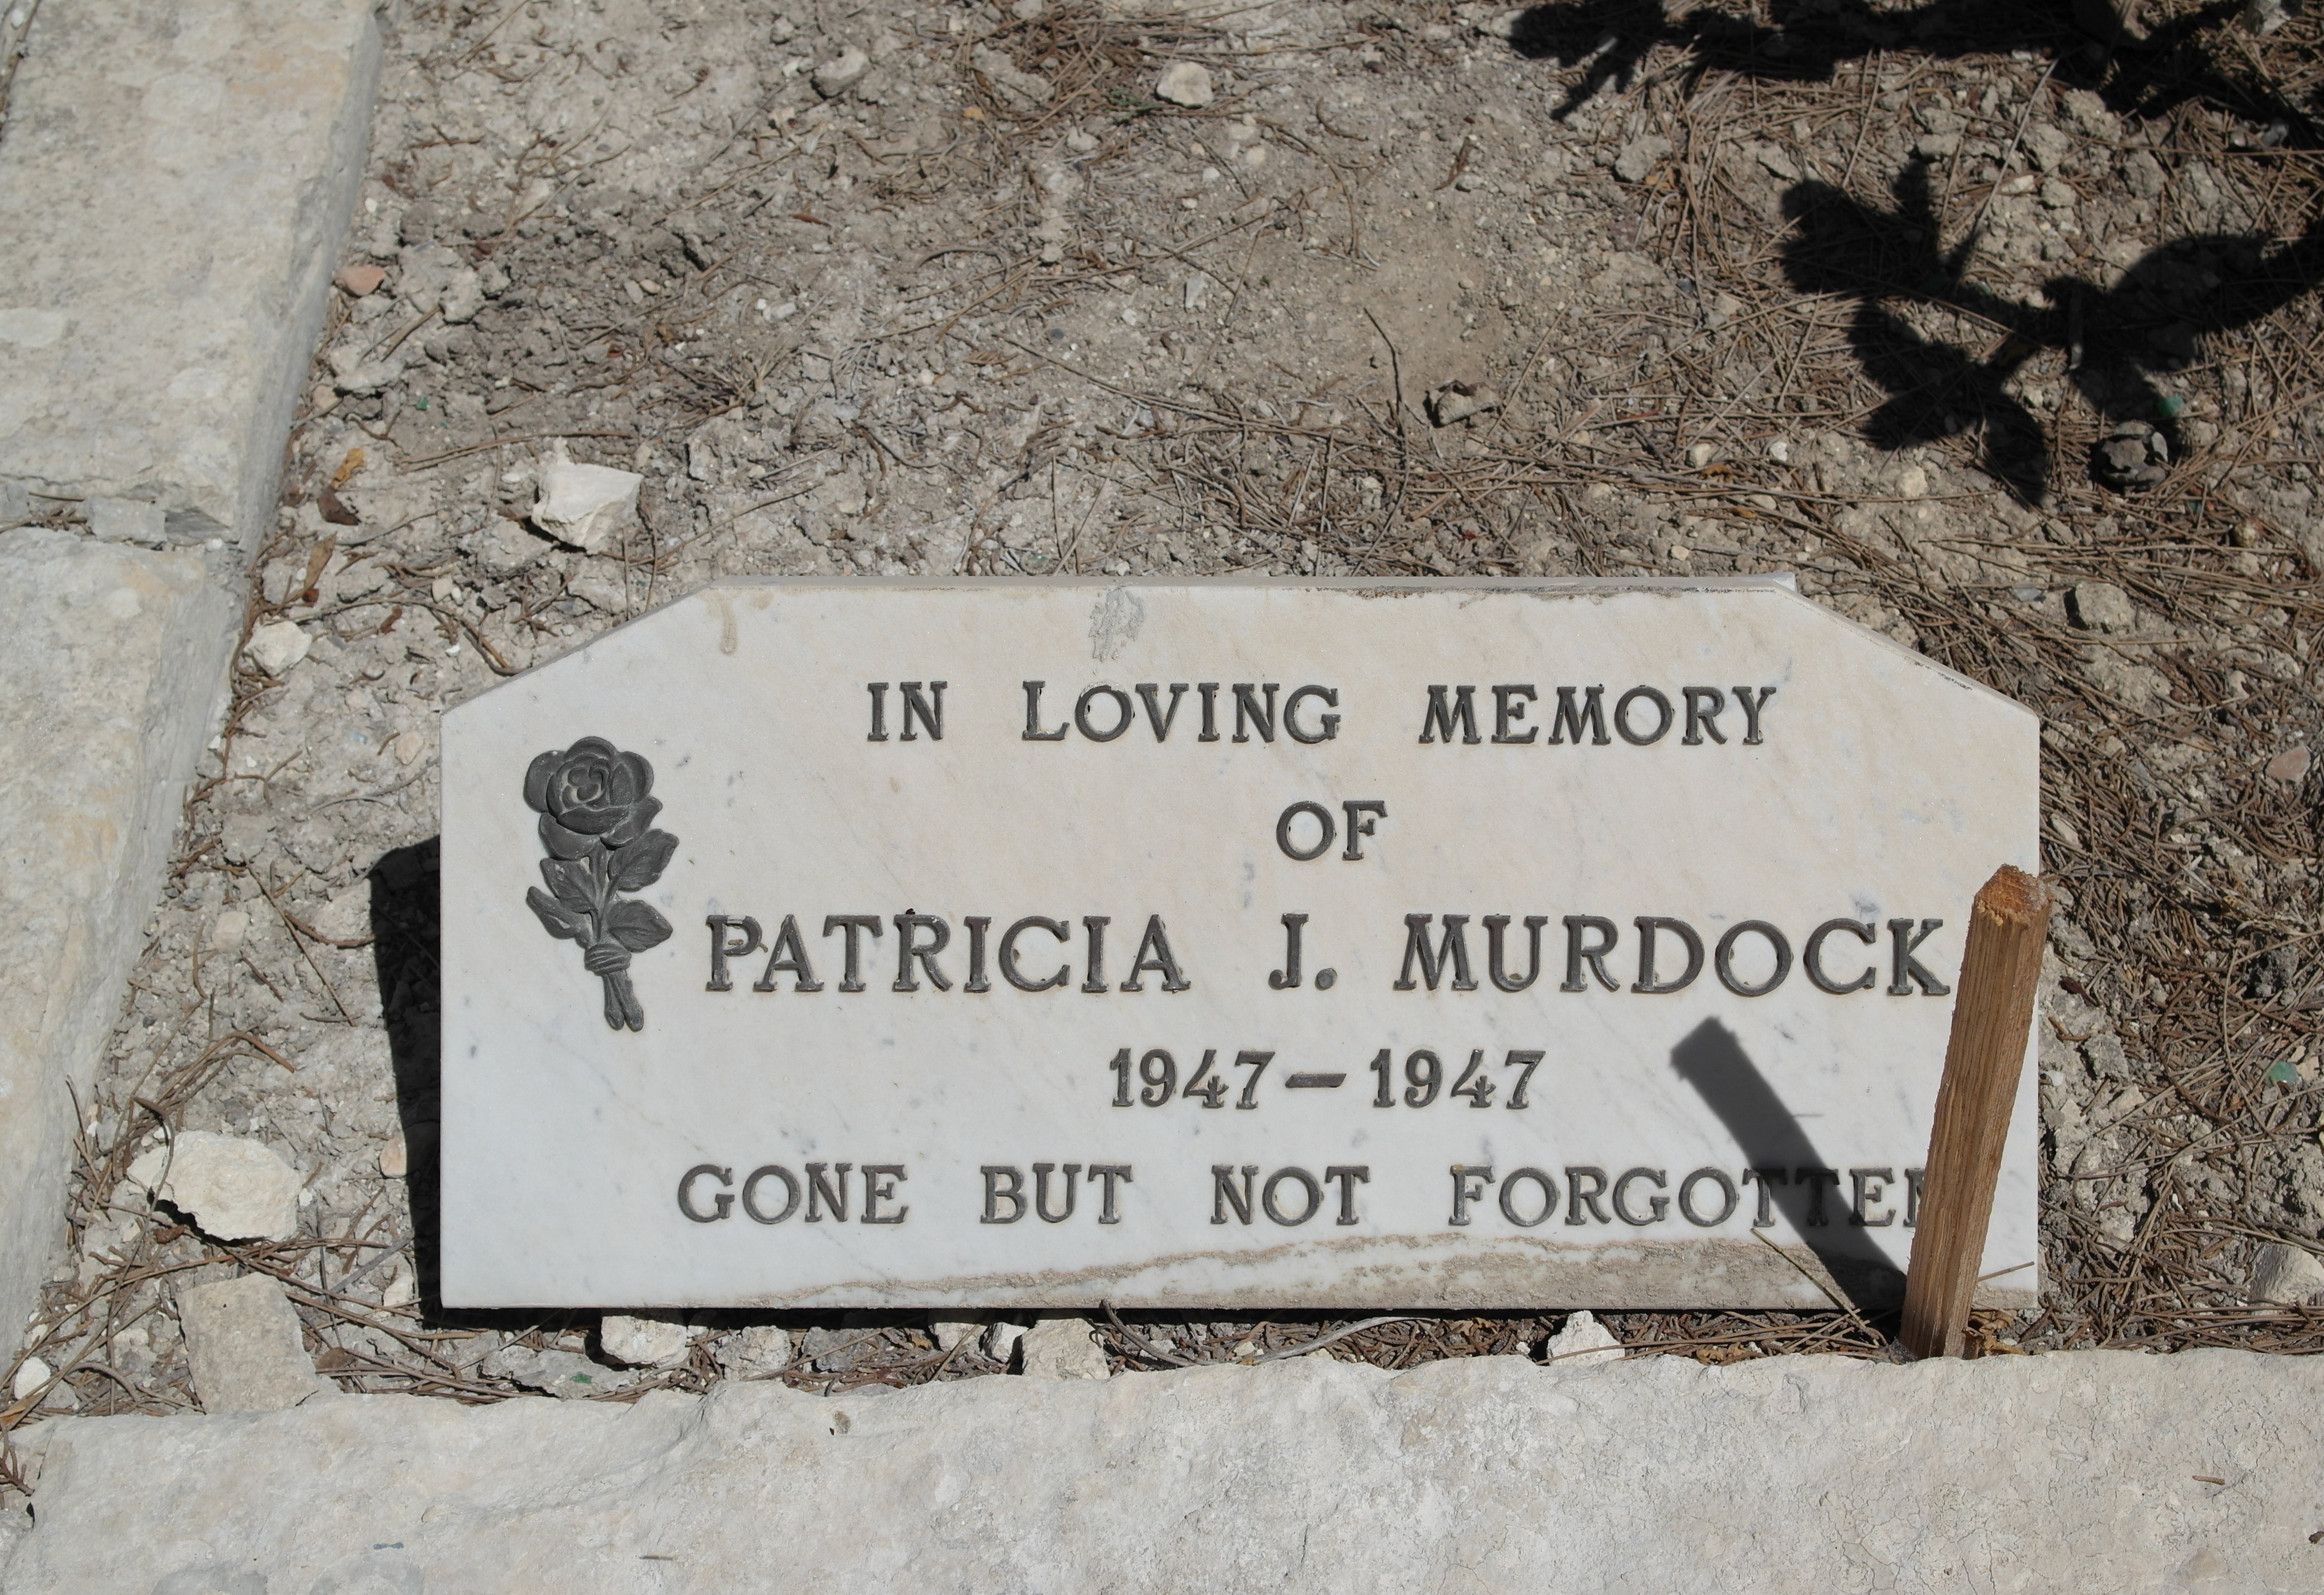 PATRICIA J MURDOCK